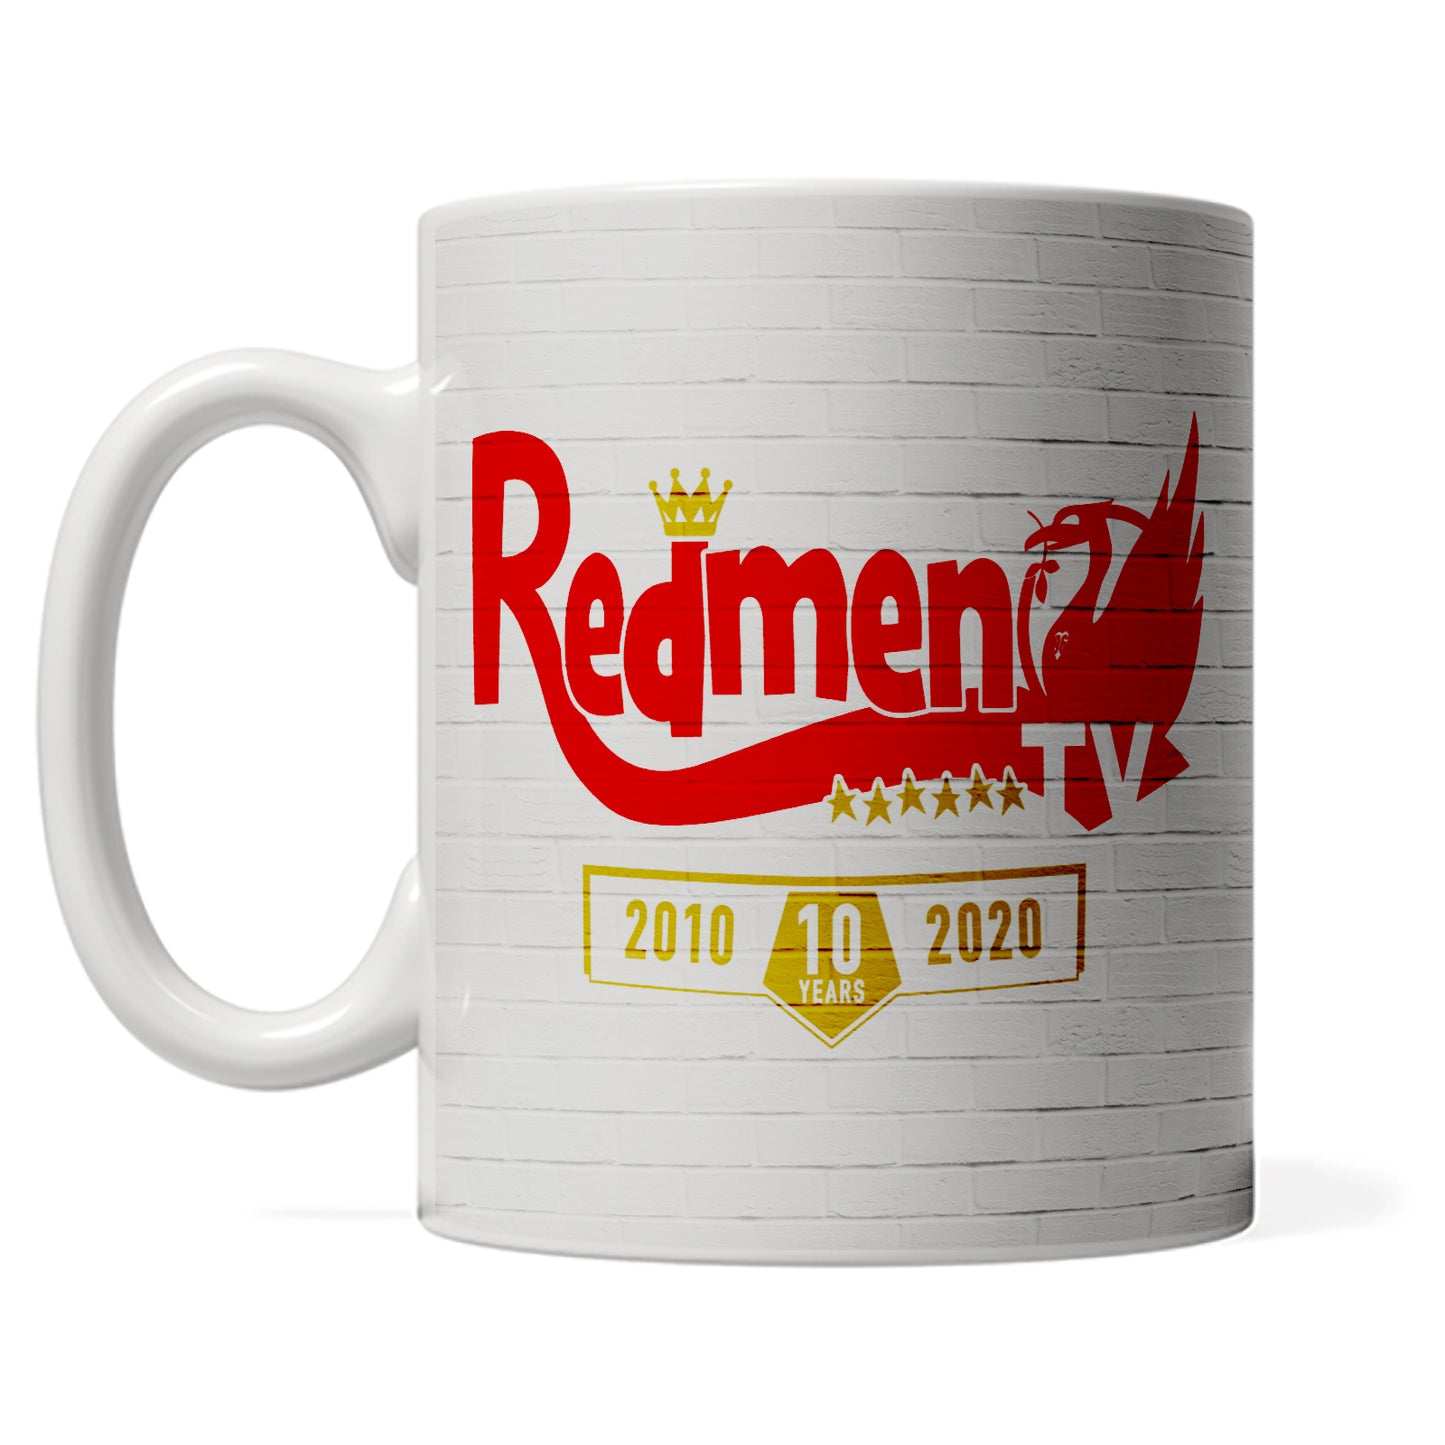 REDMEN TV '10 Years' White mug